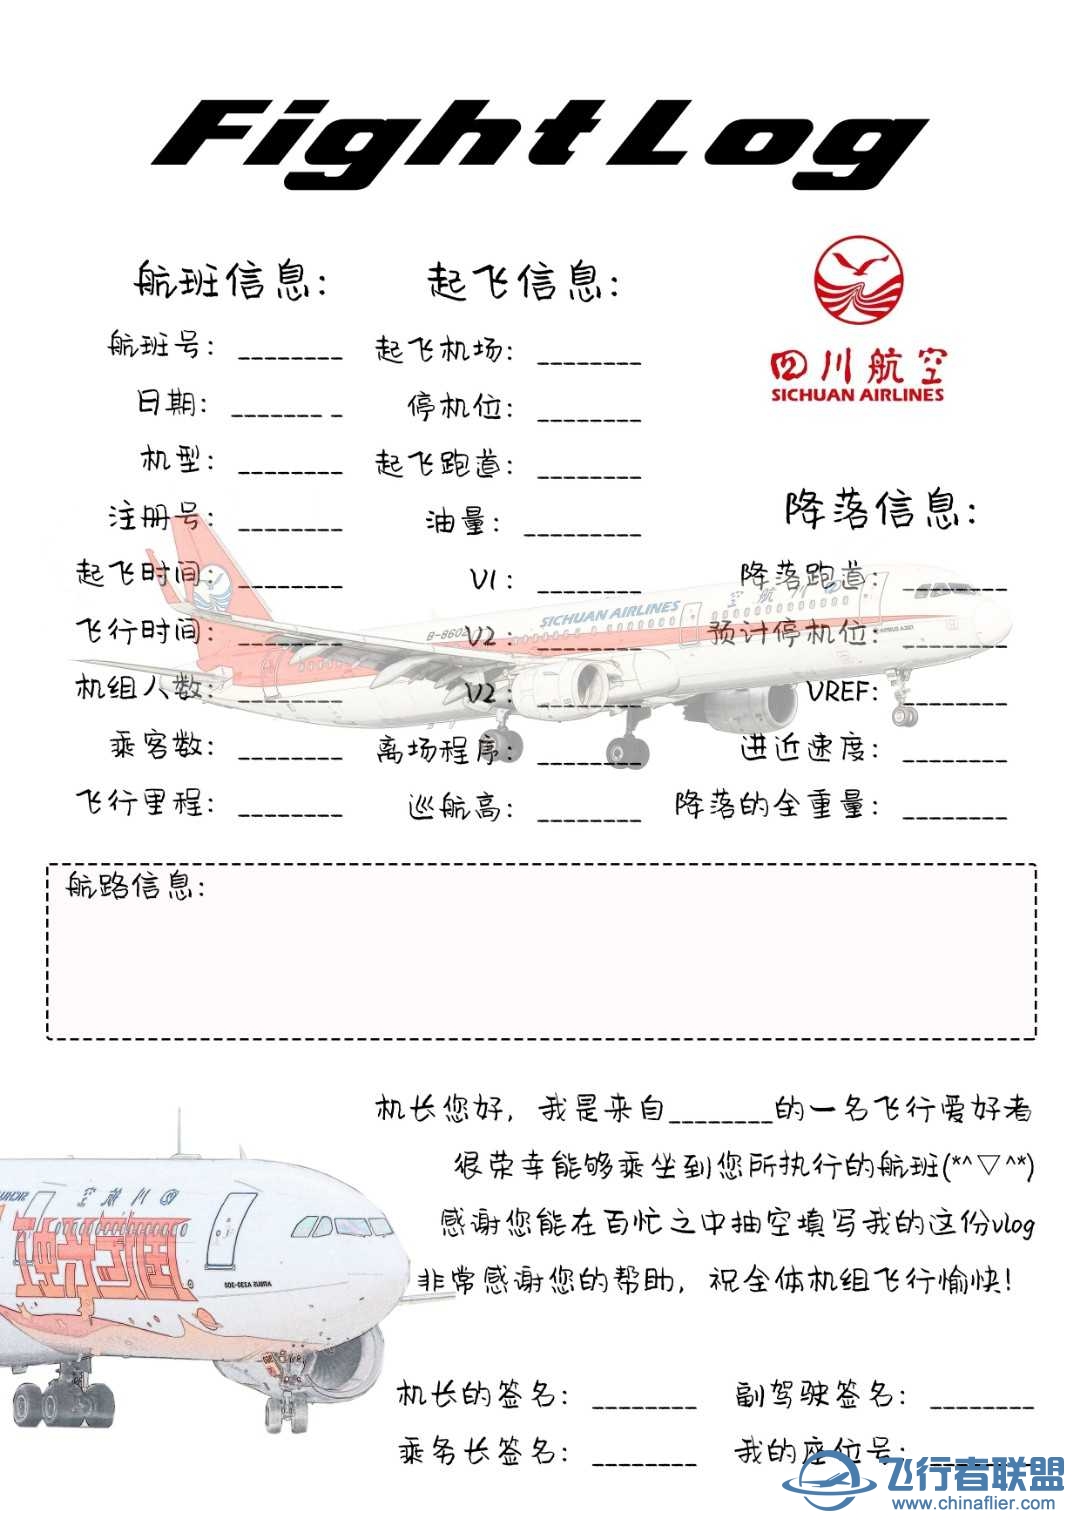 原创飞行笔记——航空公司-5025 